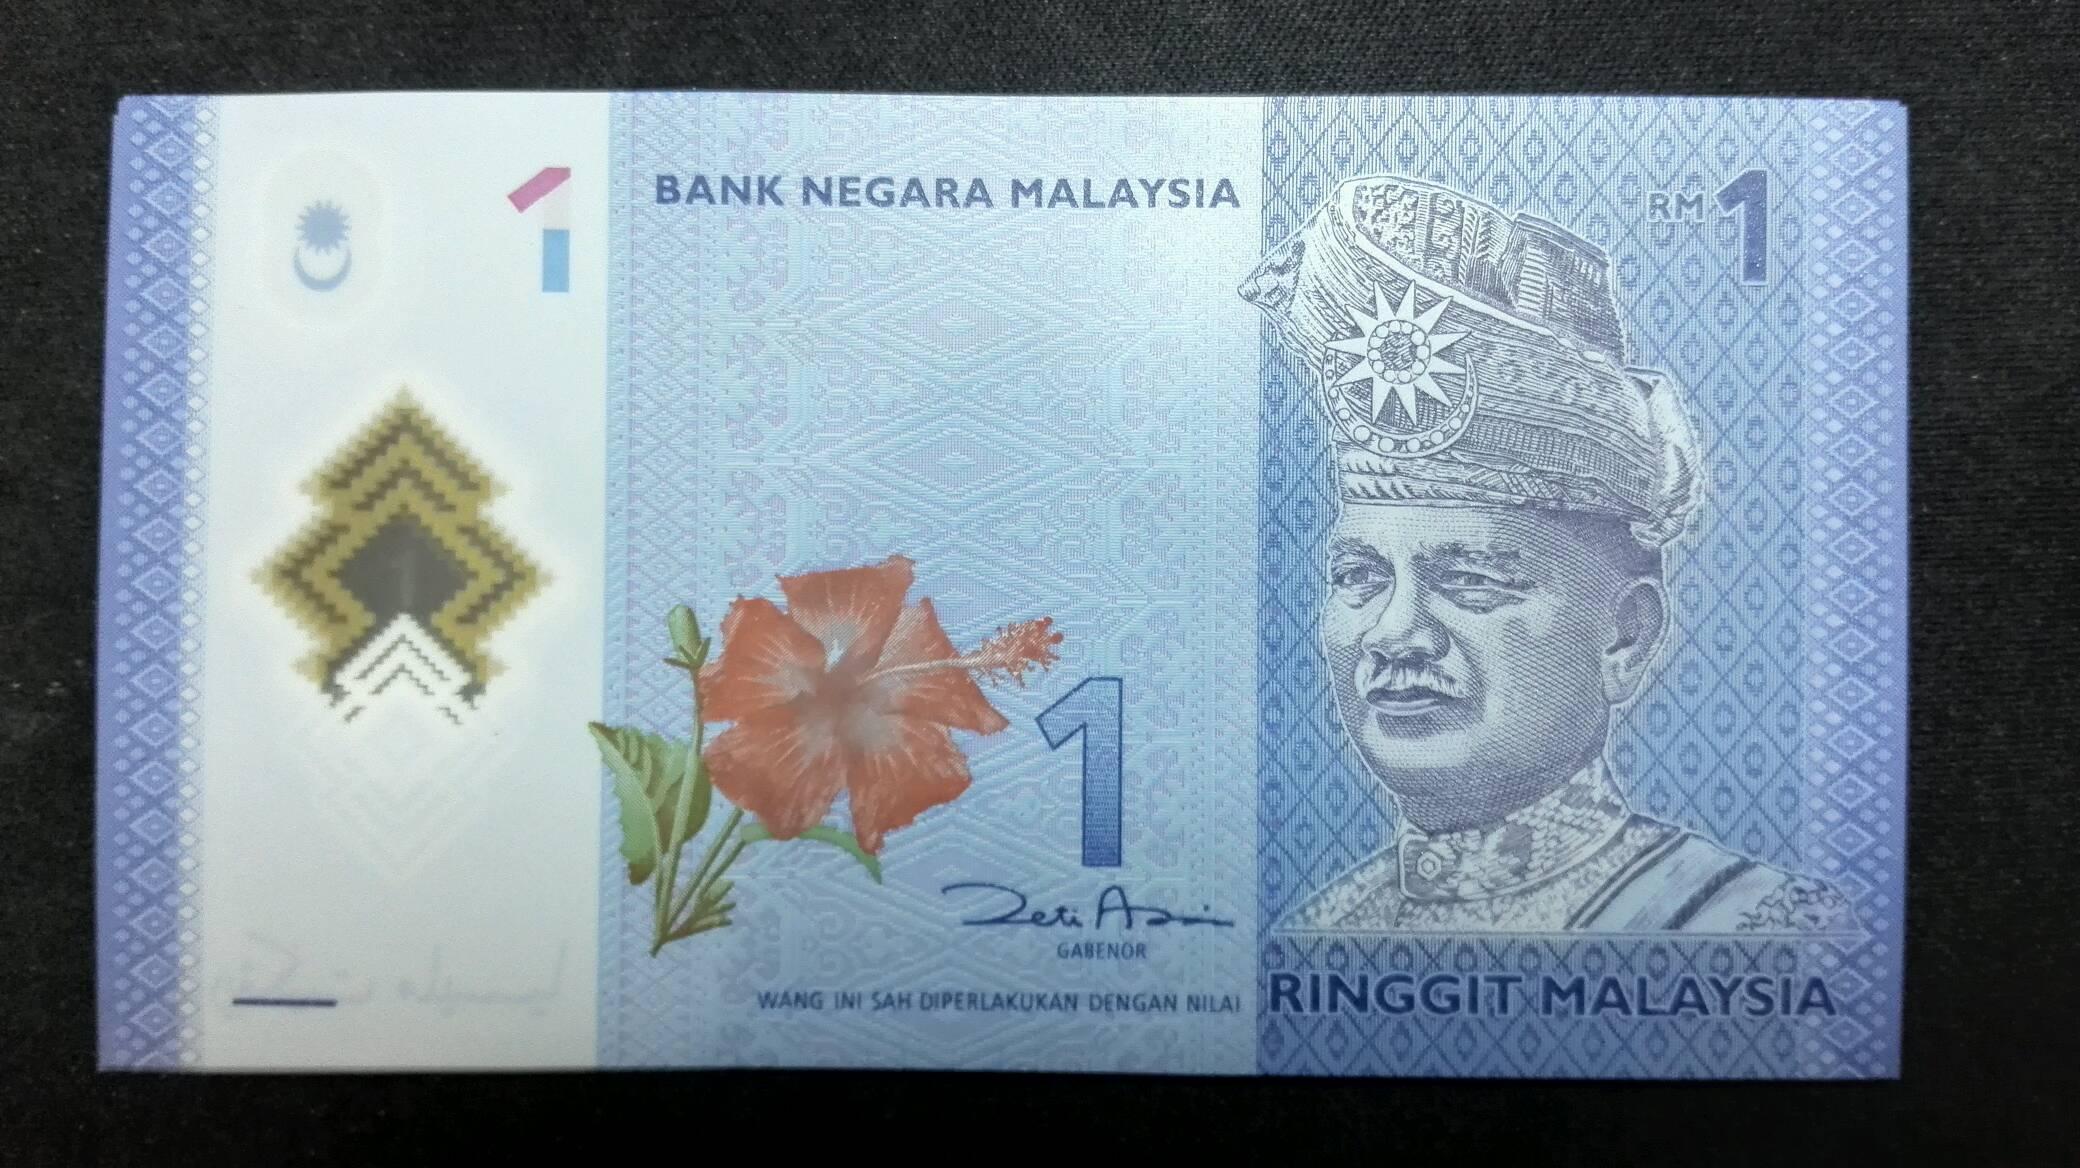 《一马来西亚林吉特塑料钞》标准十连号,收藏佳品!承